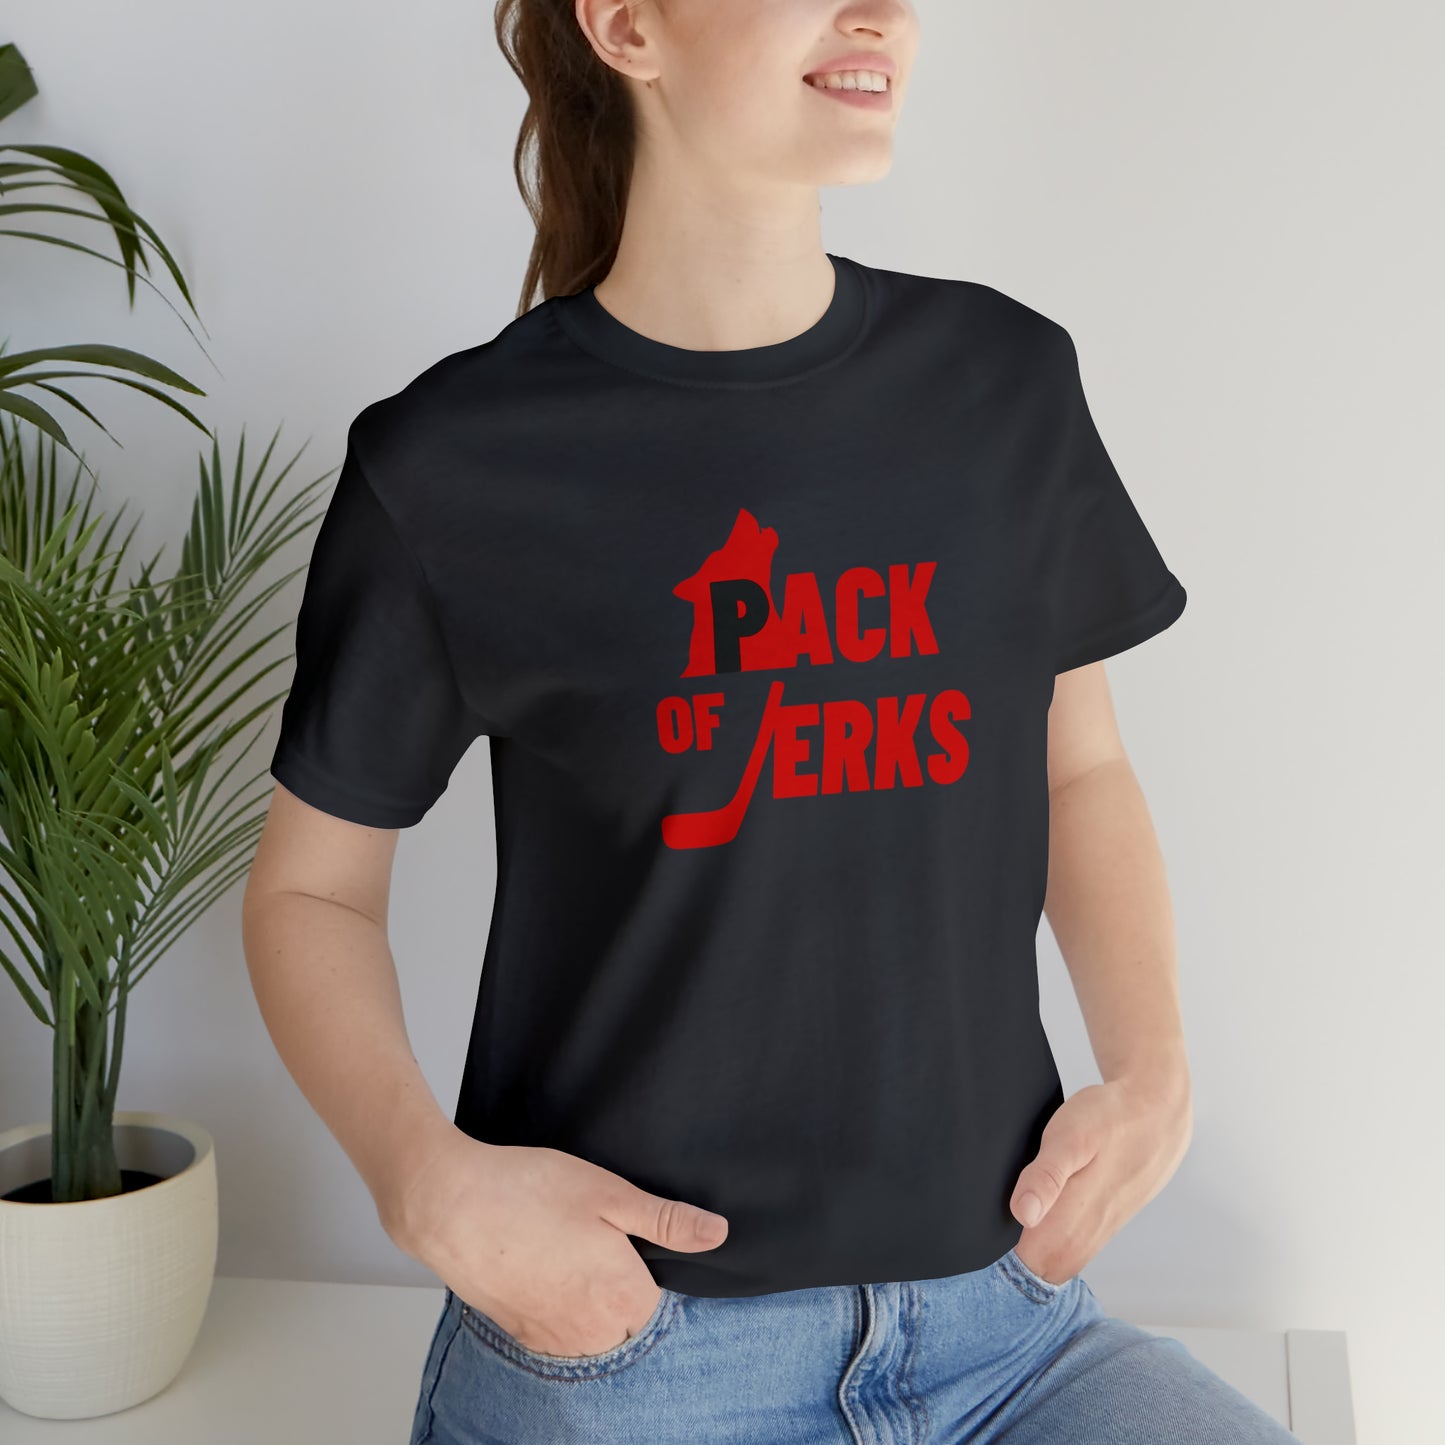 Pack of Jerks Tee (Alternate Colors)